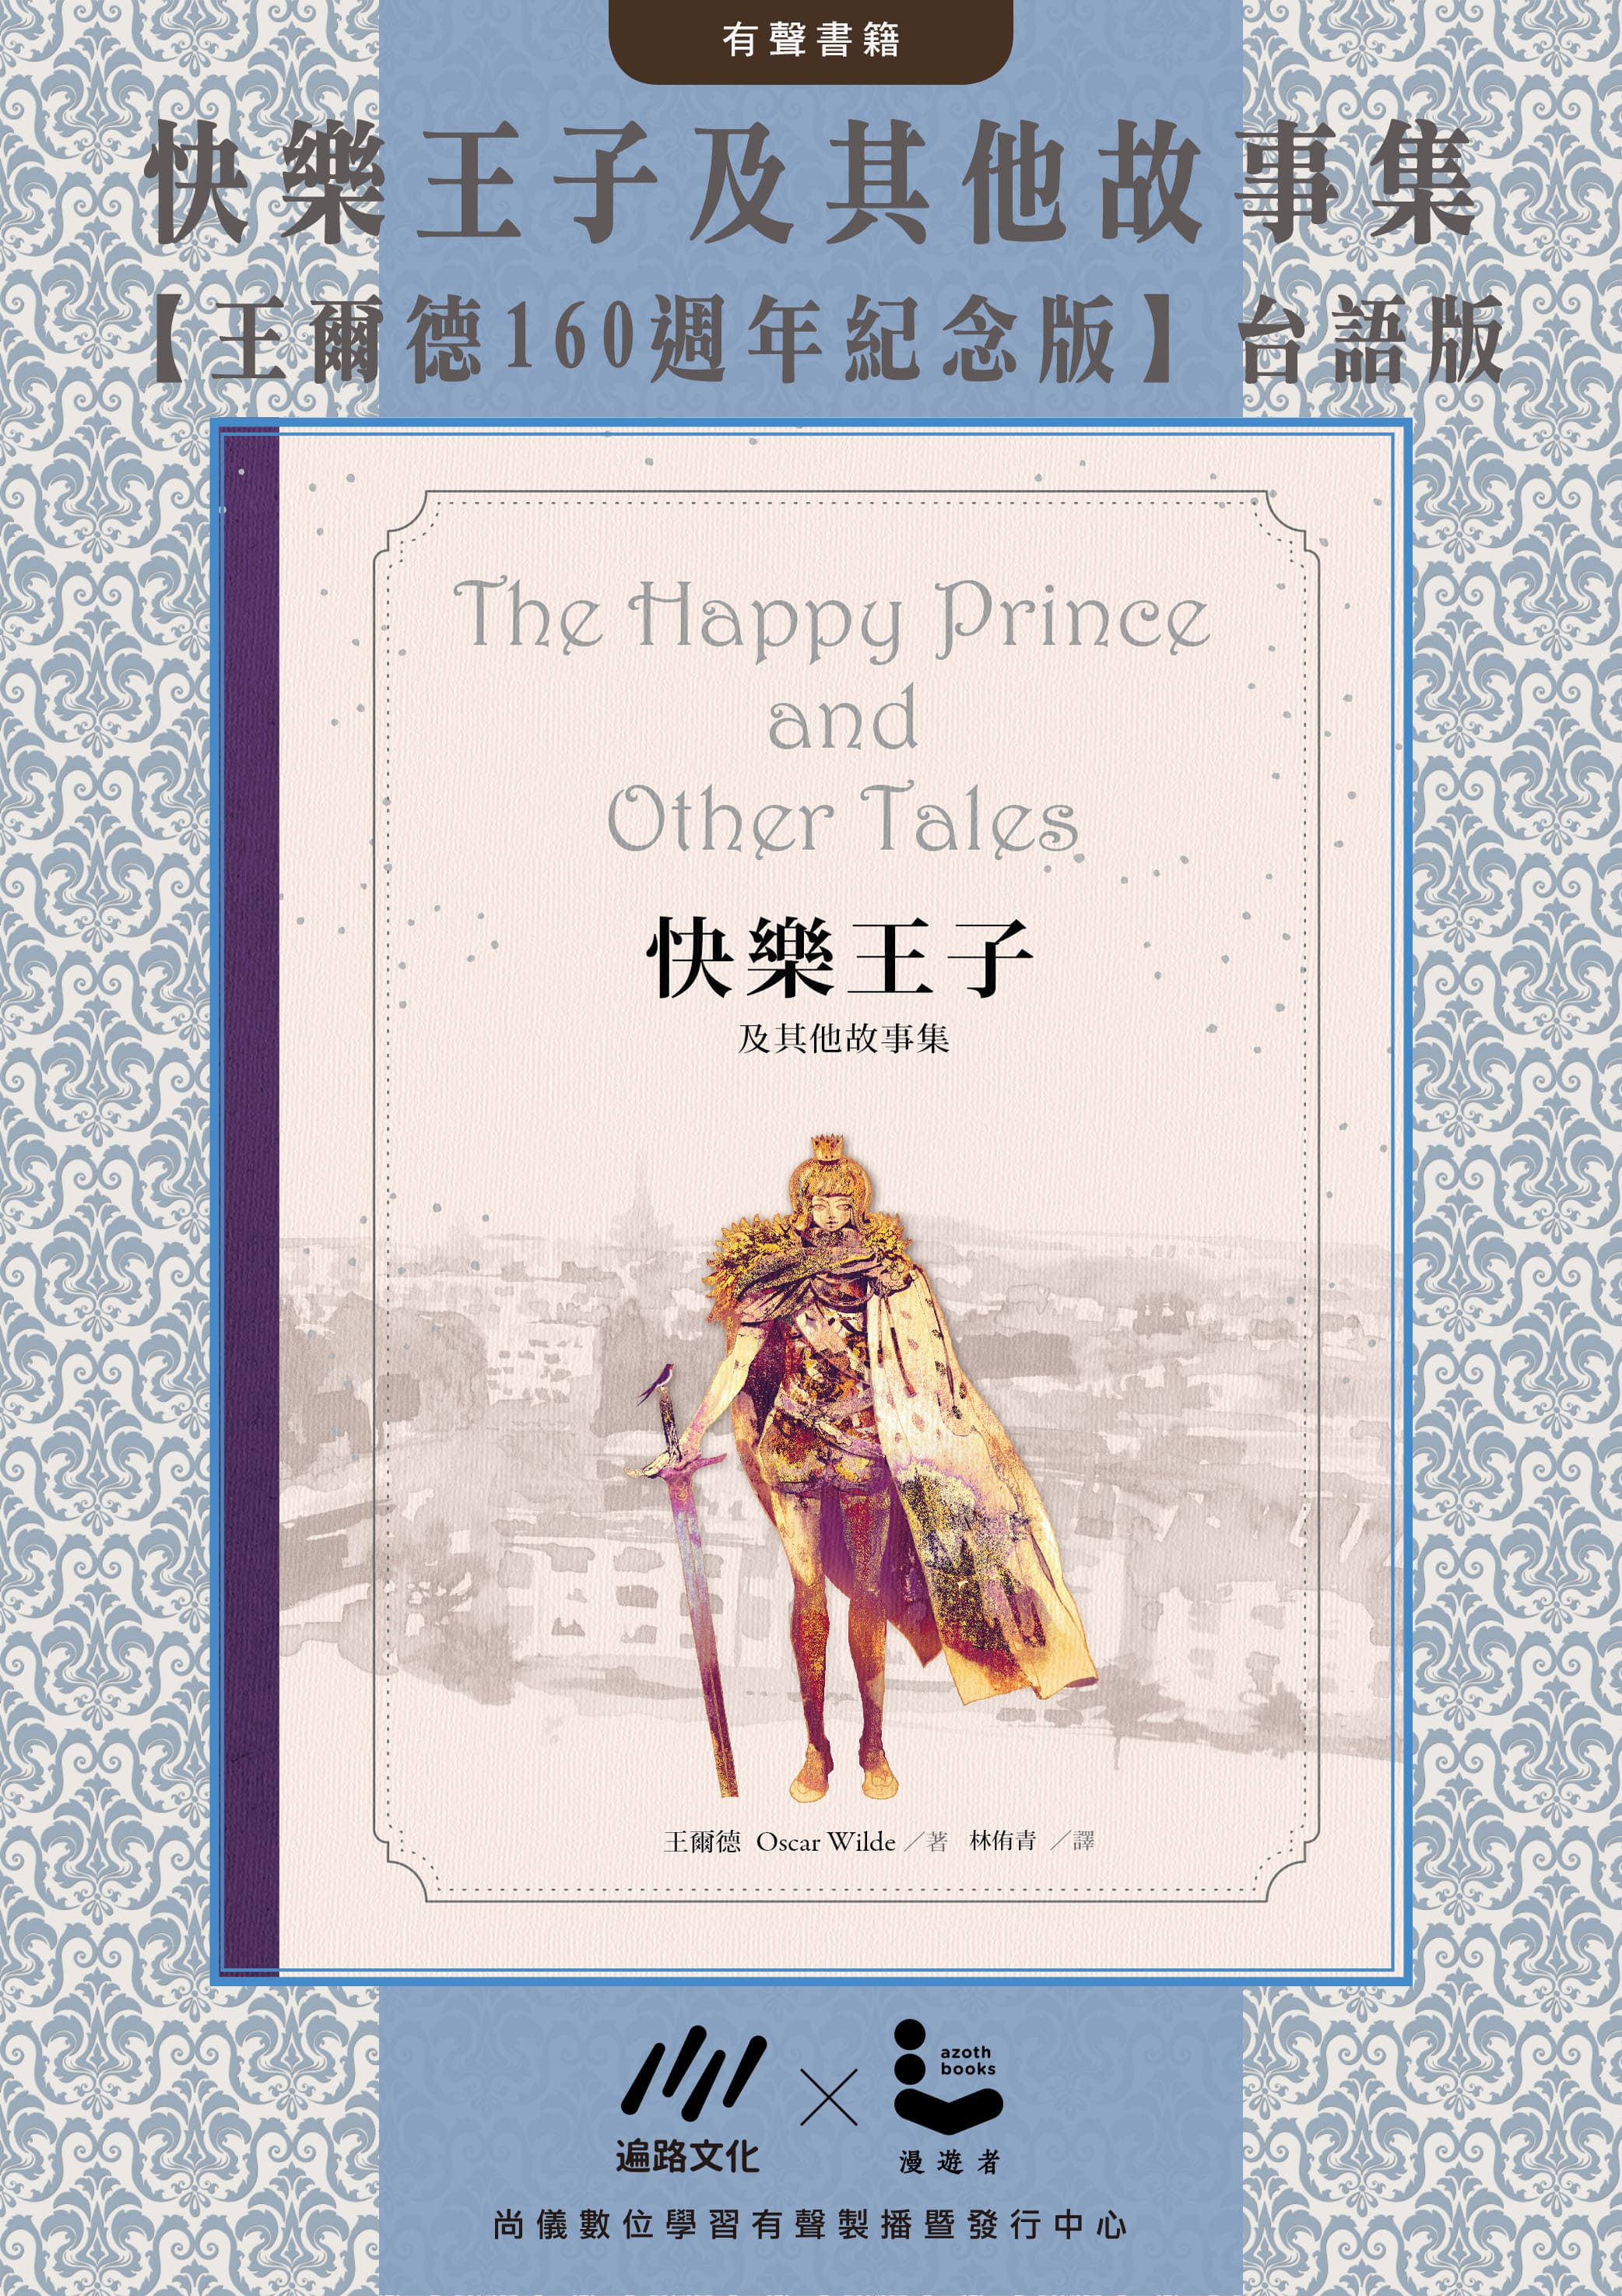 (台語版) 快樂王子及其他故事集【王爾德160週年紀念版】封面圖